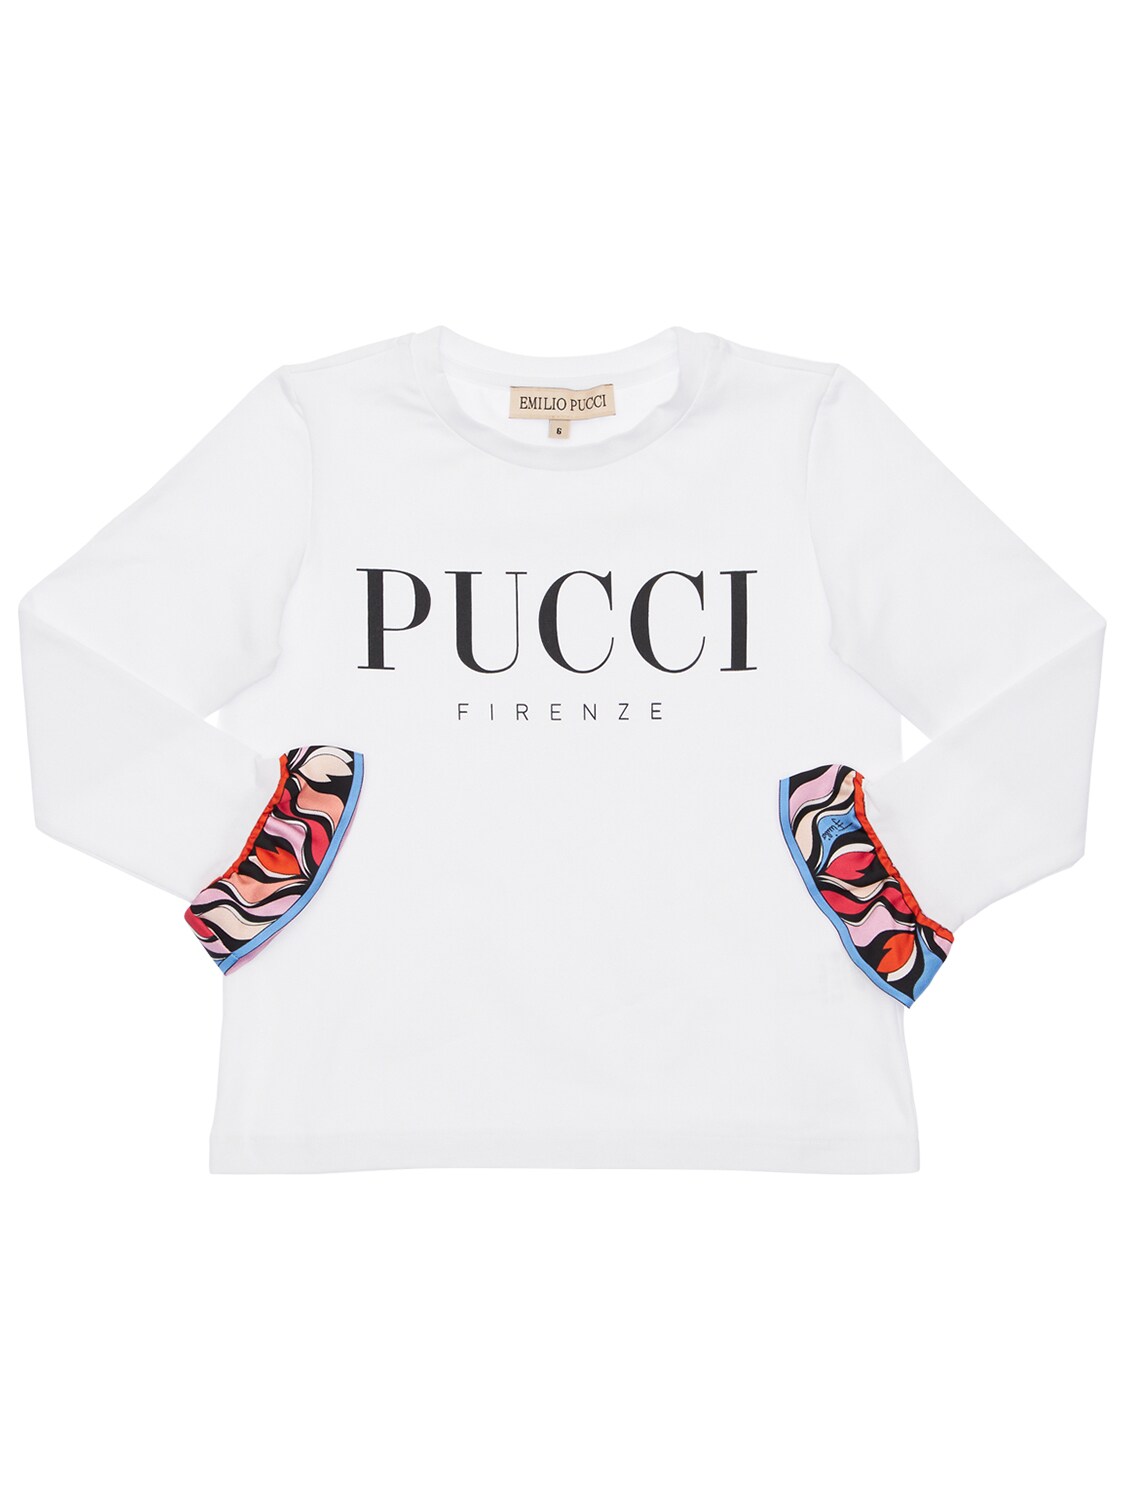 Emilio Pucci Kids' Cotton Jersey T-shirt W/ Silk Details In White